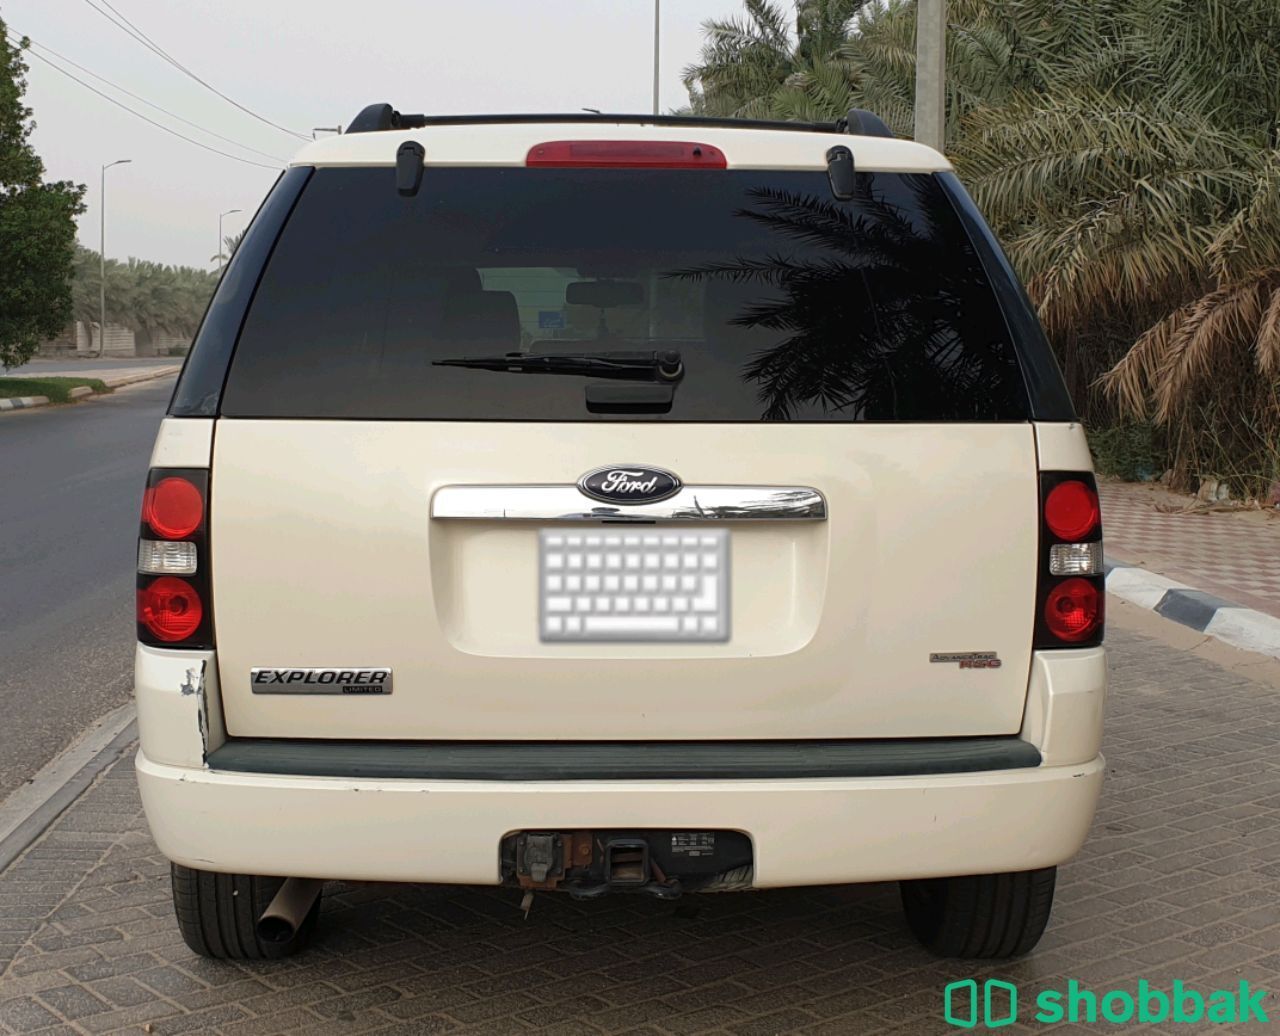 سيارة مستعملة للبيع Shobbak Saudi Arabia